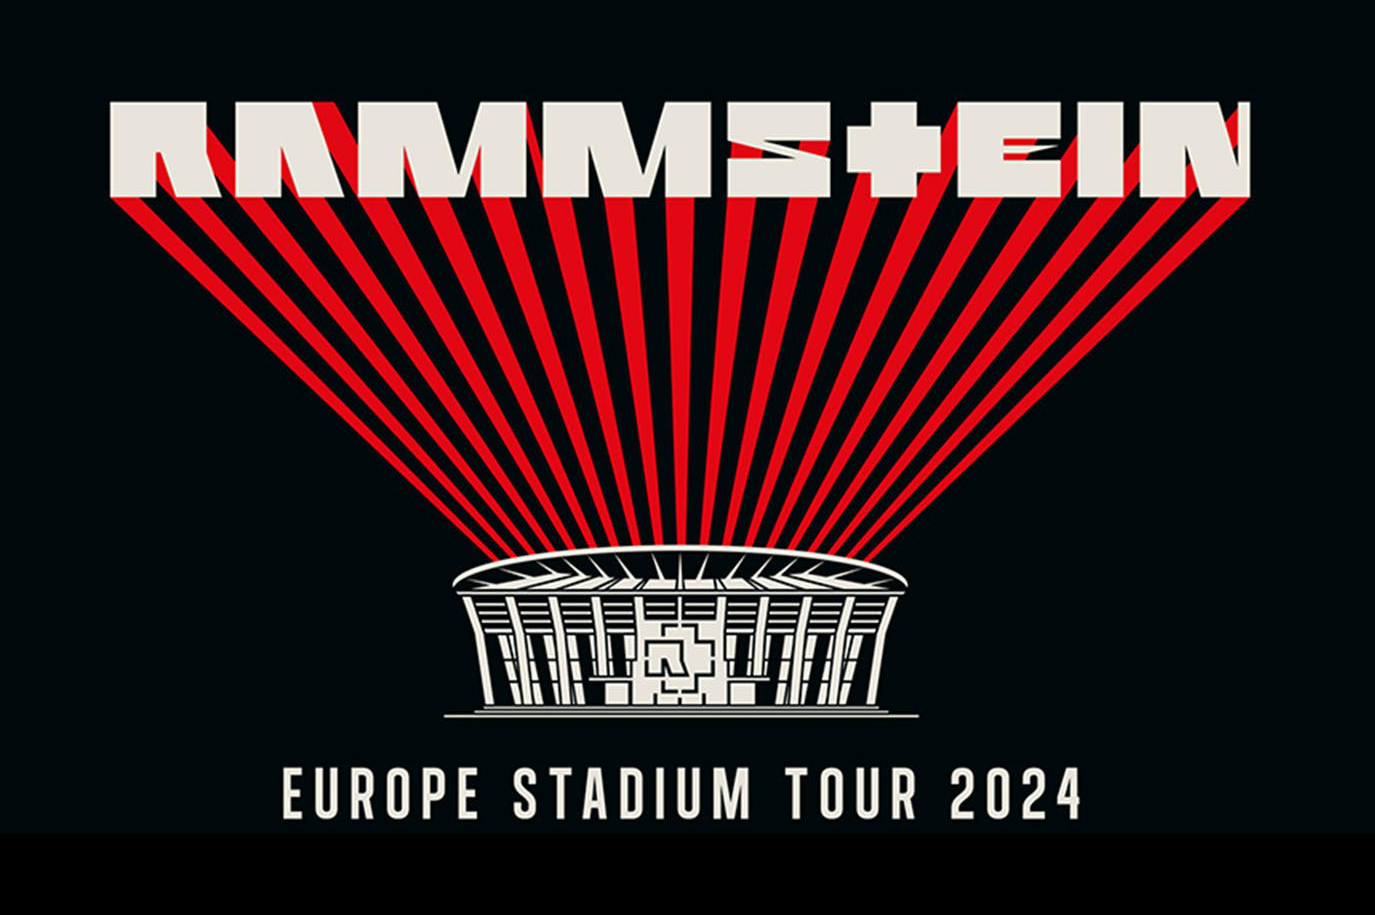 rammstein european tour 2024